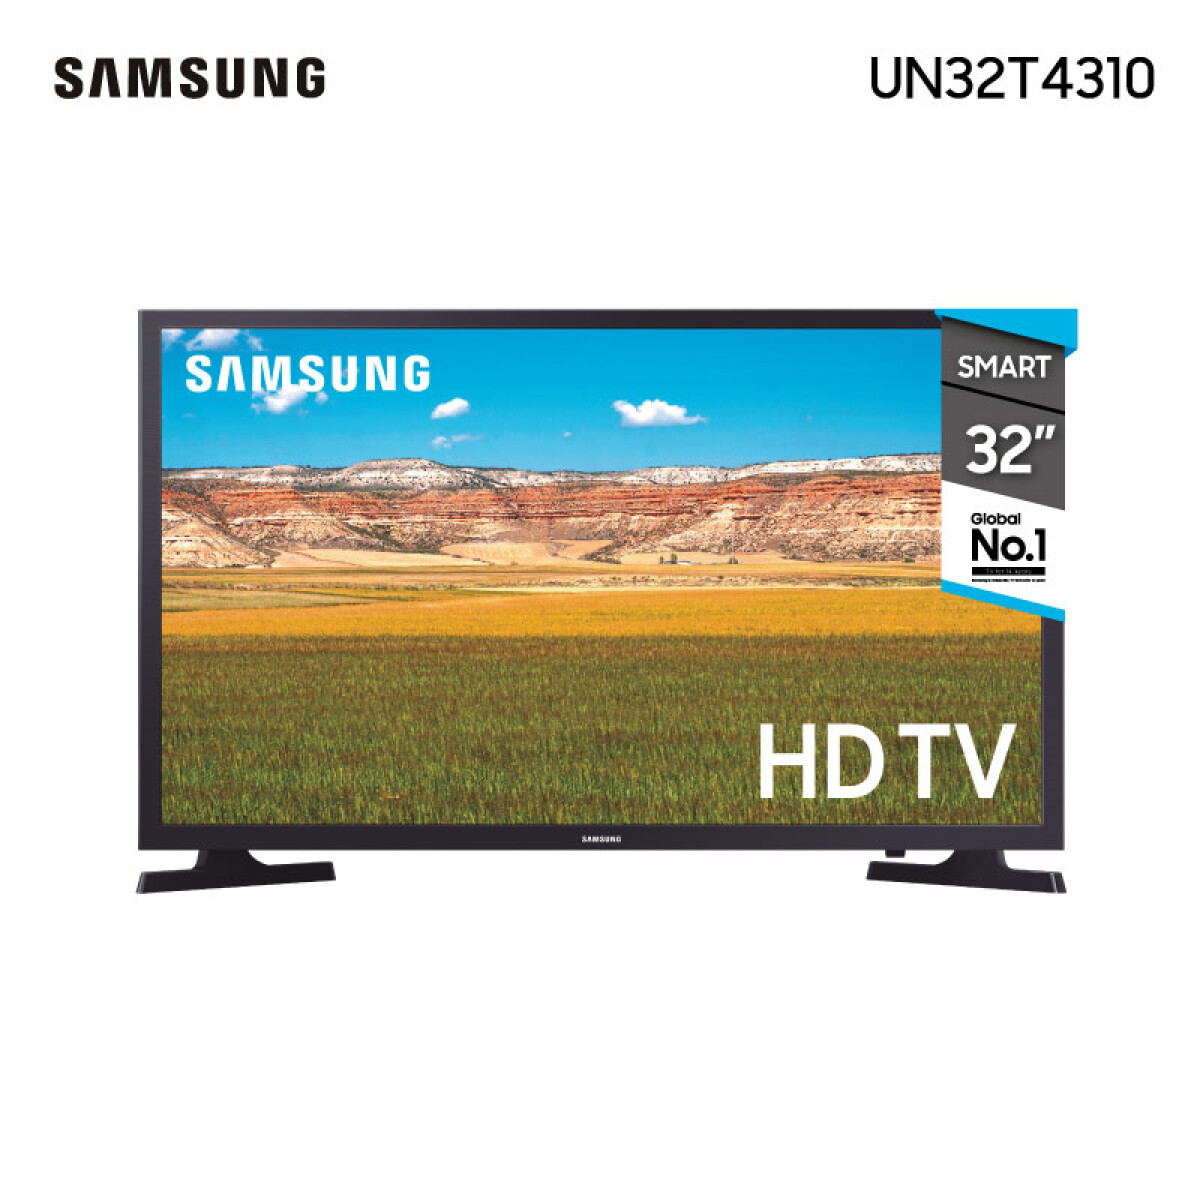 Smart Tv Samsung Series 4 Un32t4310agxug Led Hd 32 100v/240v 